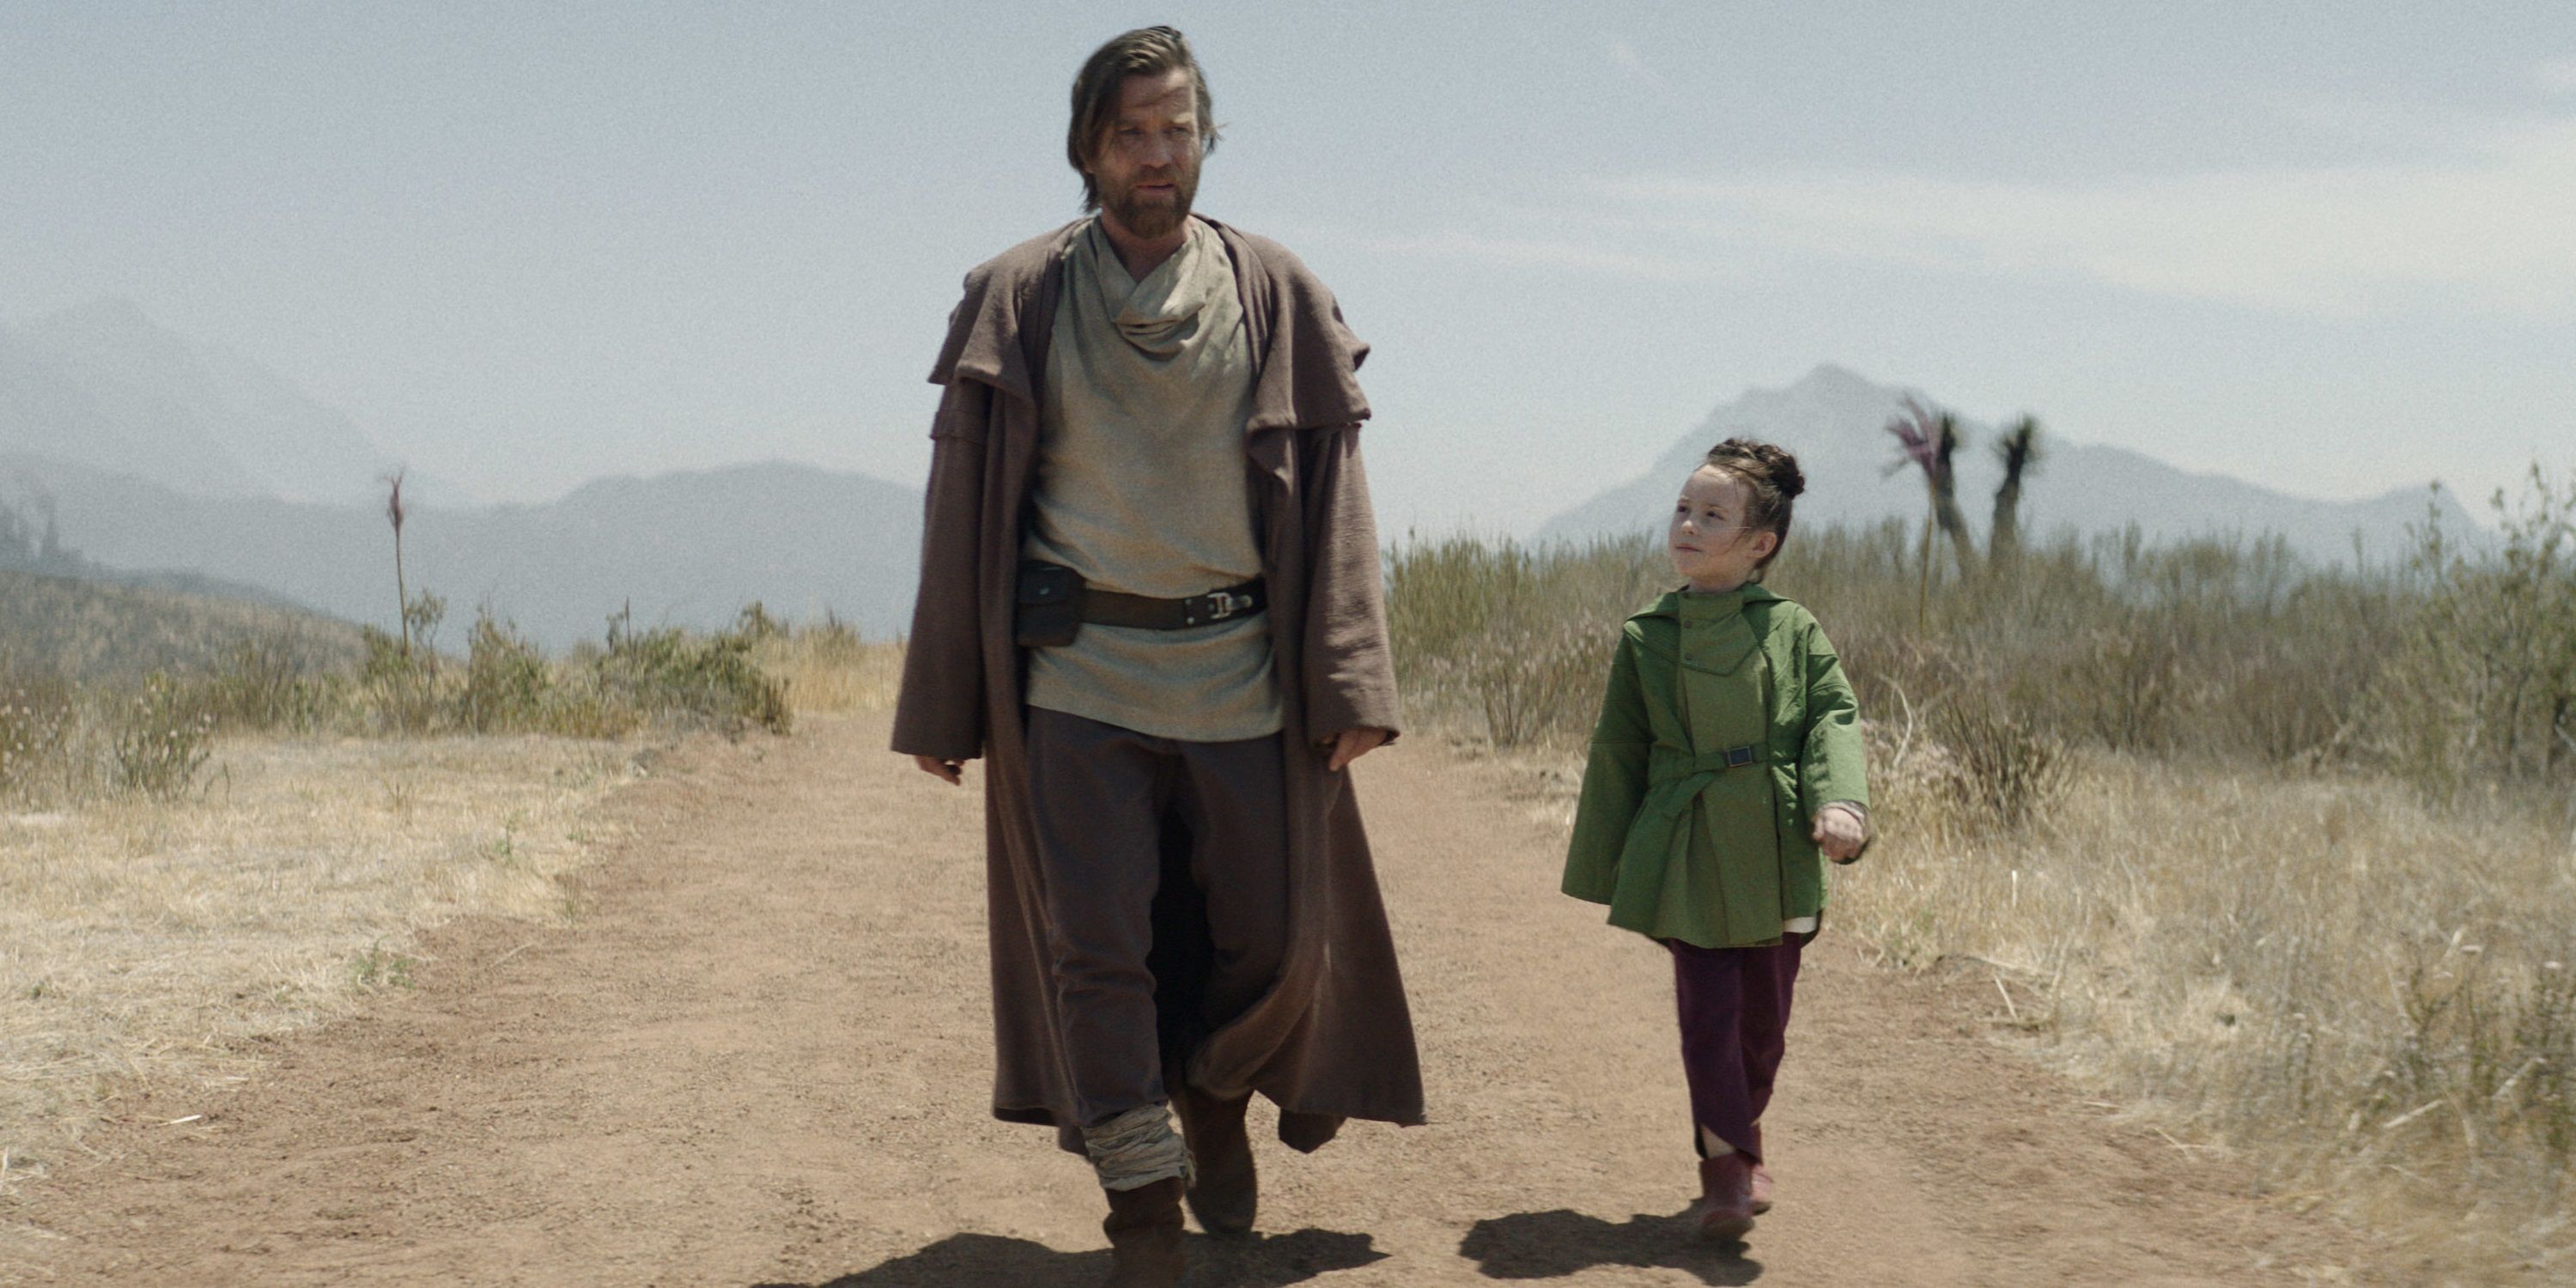 Obi-Wan and Leia walk down a dusty road in Obi-Wan Kenobi